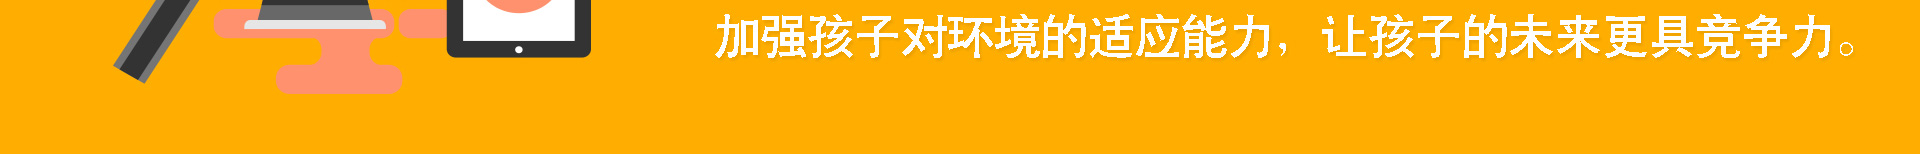 加盟网站zuizhong_34.jpg